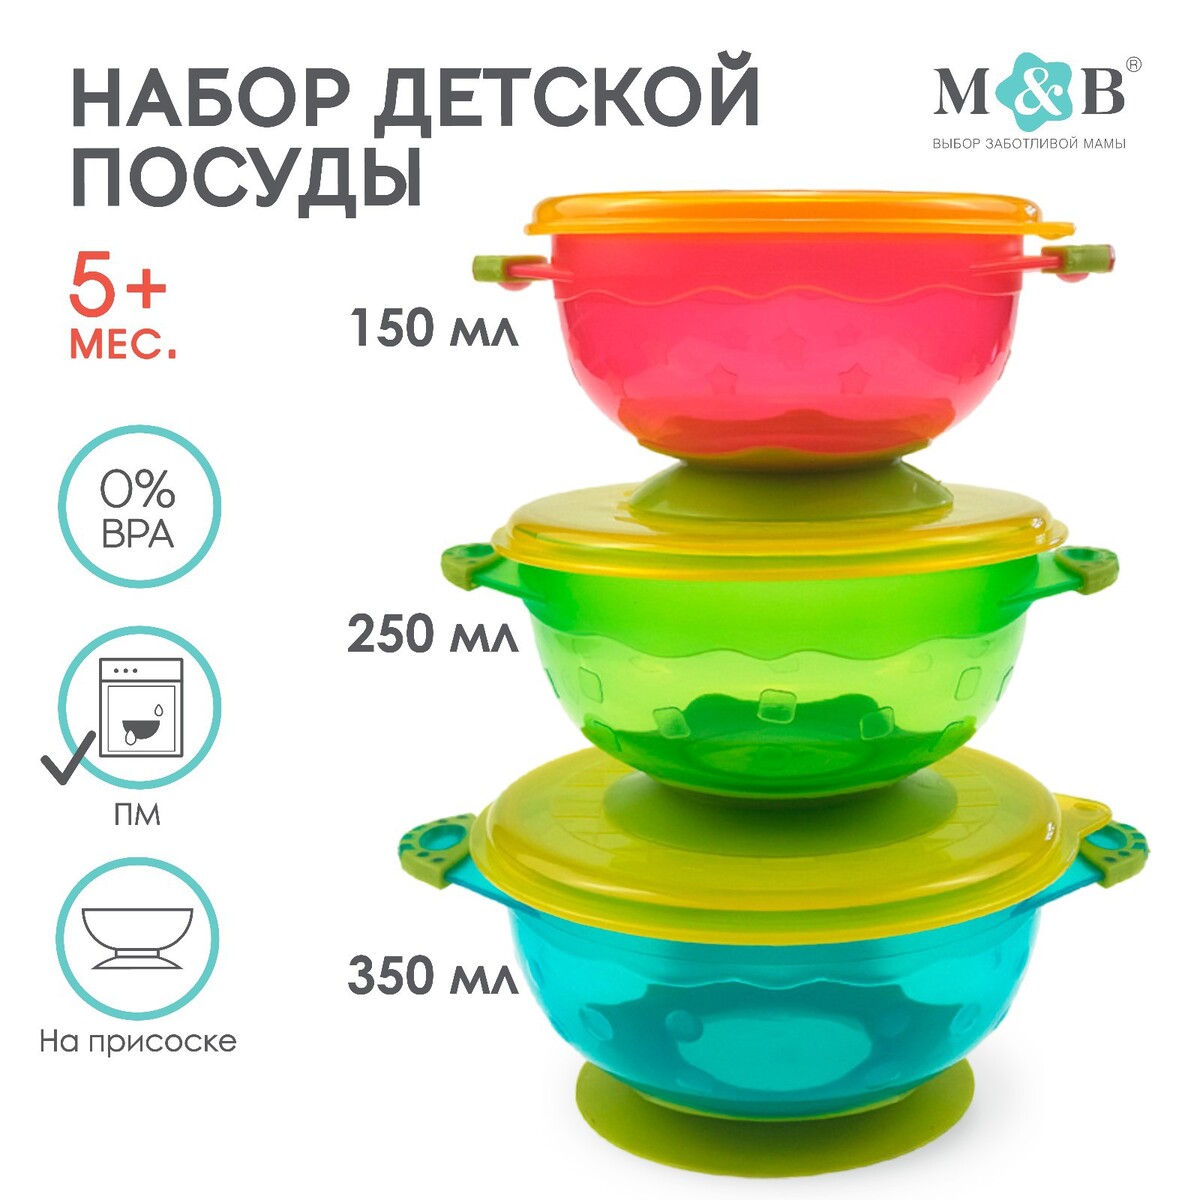 Набор детской посуды для кормления/хранения: миски на присоске, 3 шт.,150, 250, 350 мл. с крышками, от 5 мес. набор для кормления нагрудник тарелка на присоске ложка m